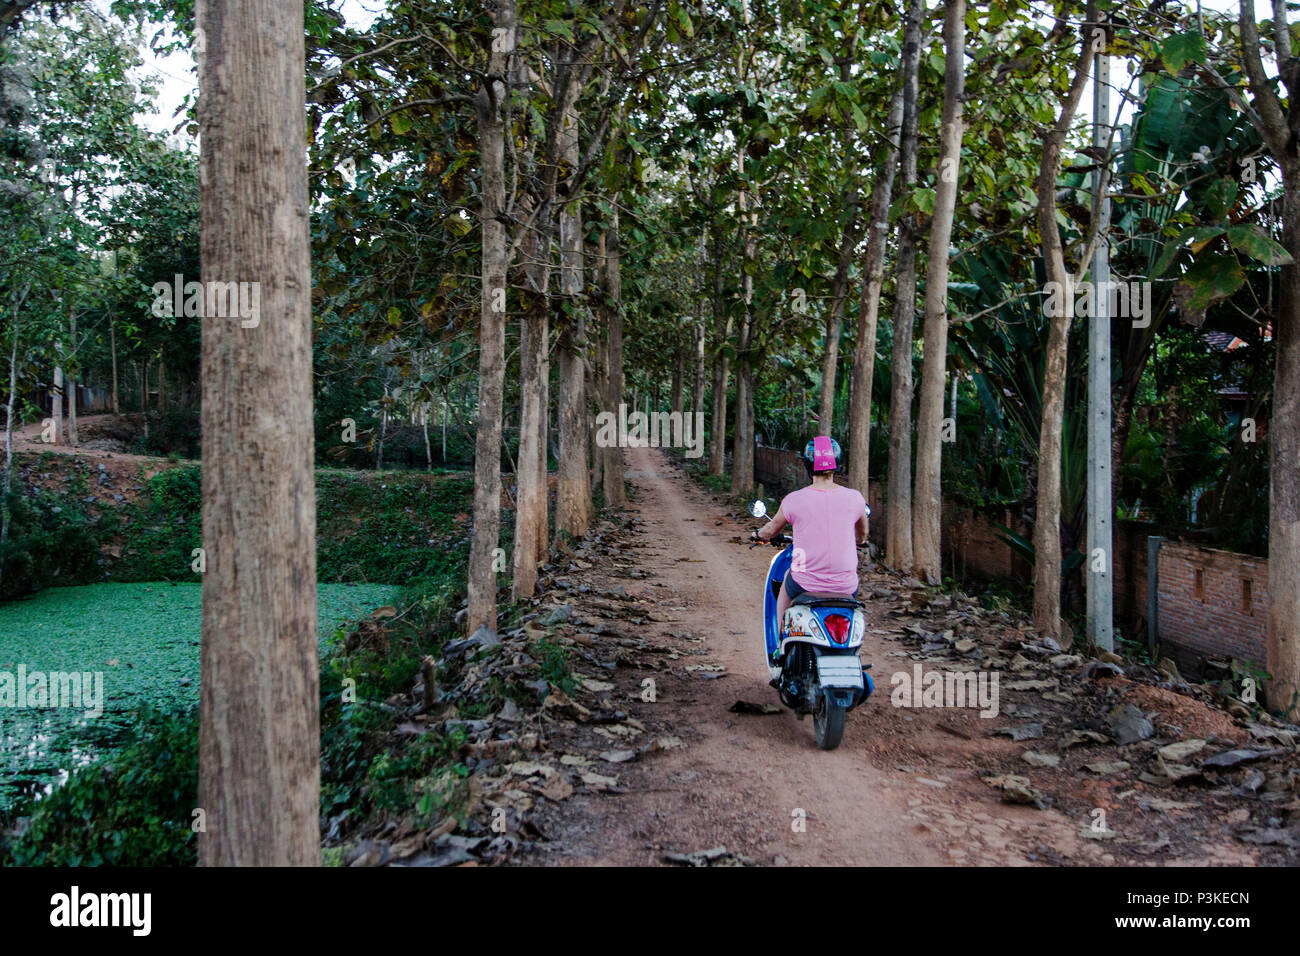 Woman riding scooter sur route forestière, PAI, Mae Hong Son, Thaïlande bientôt Banque D'Images